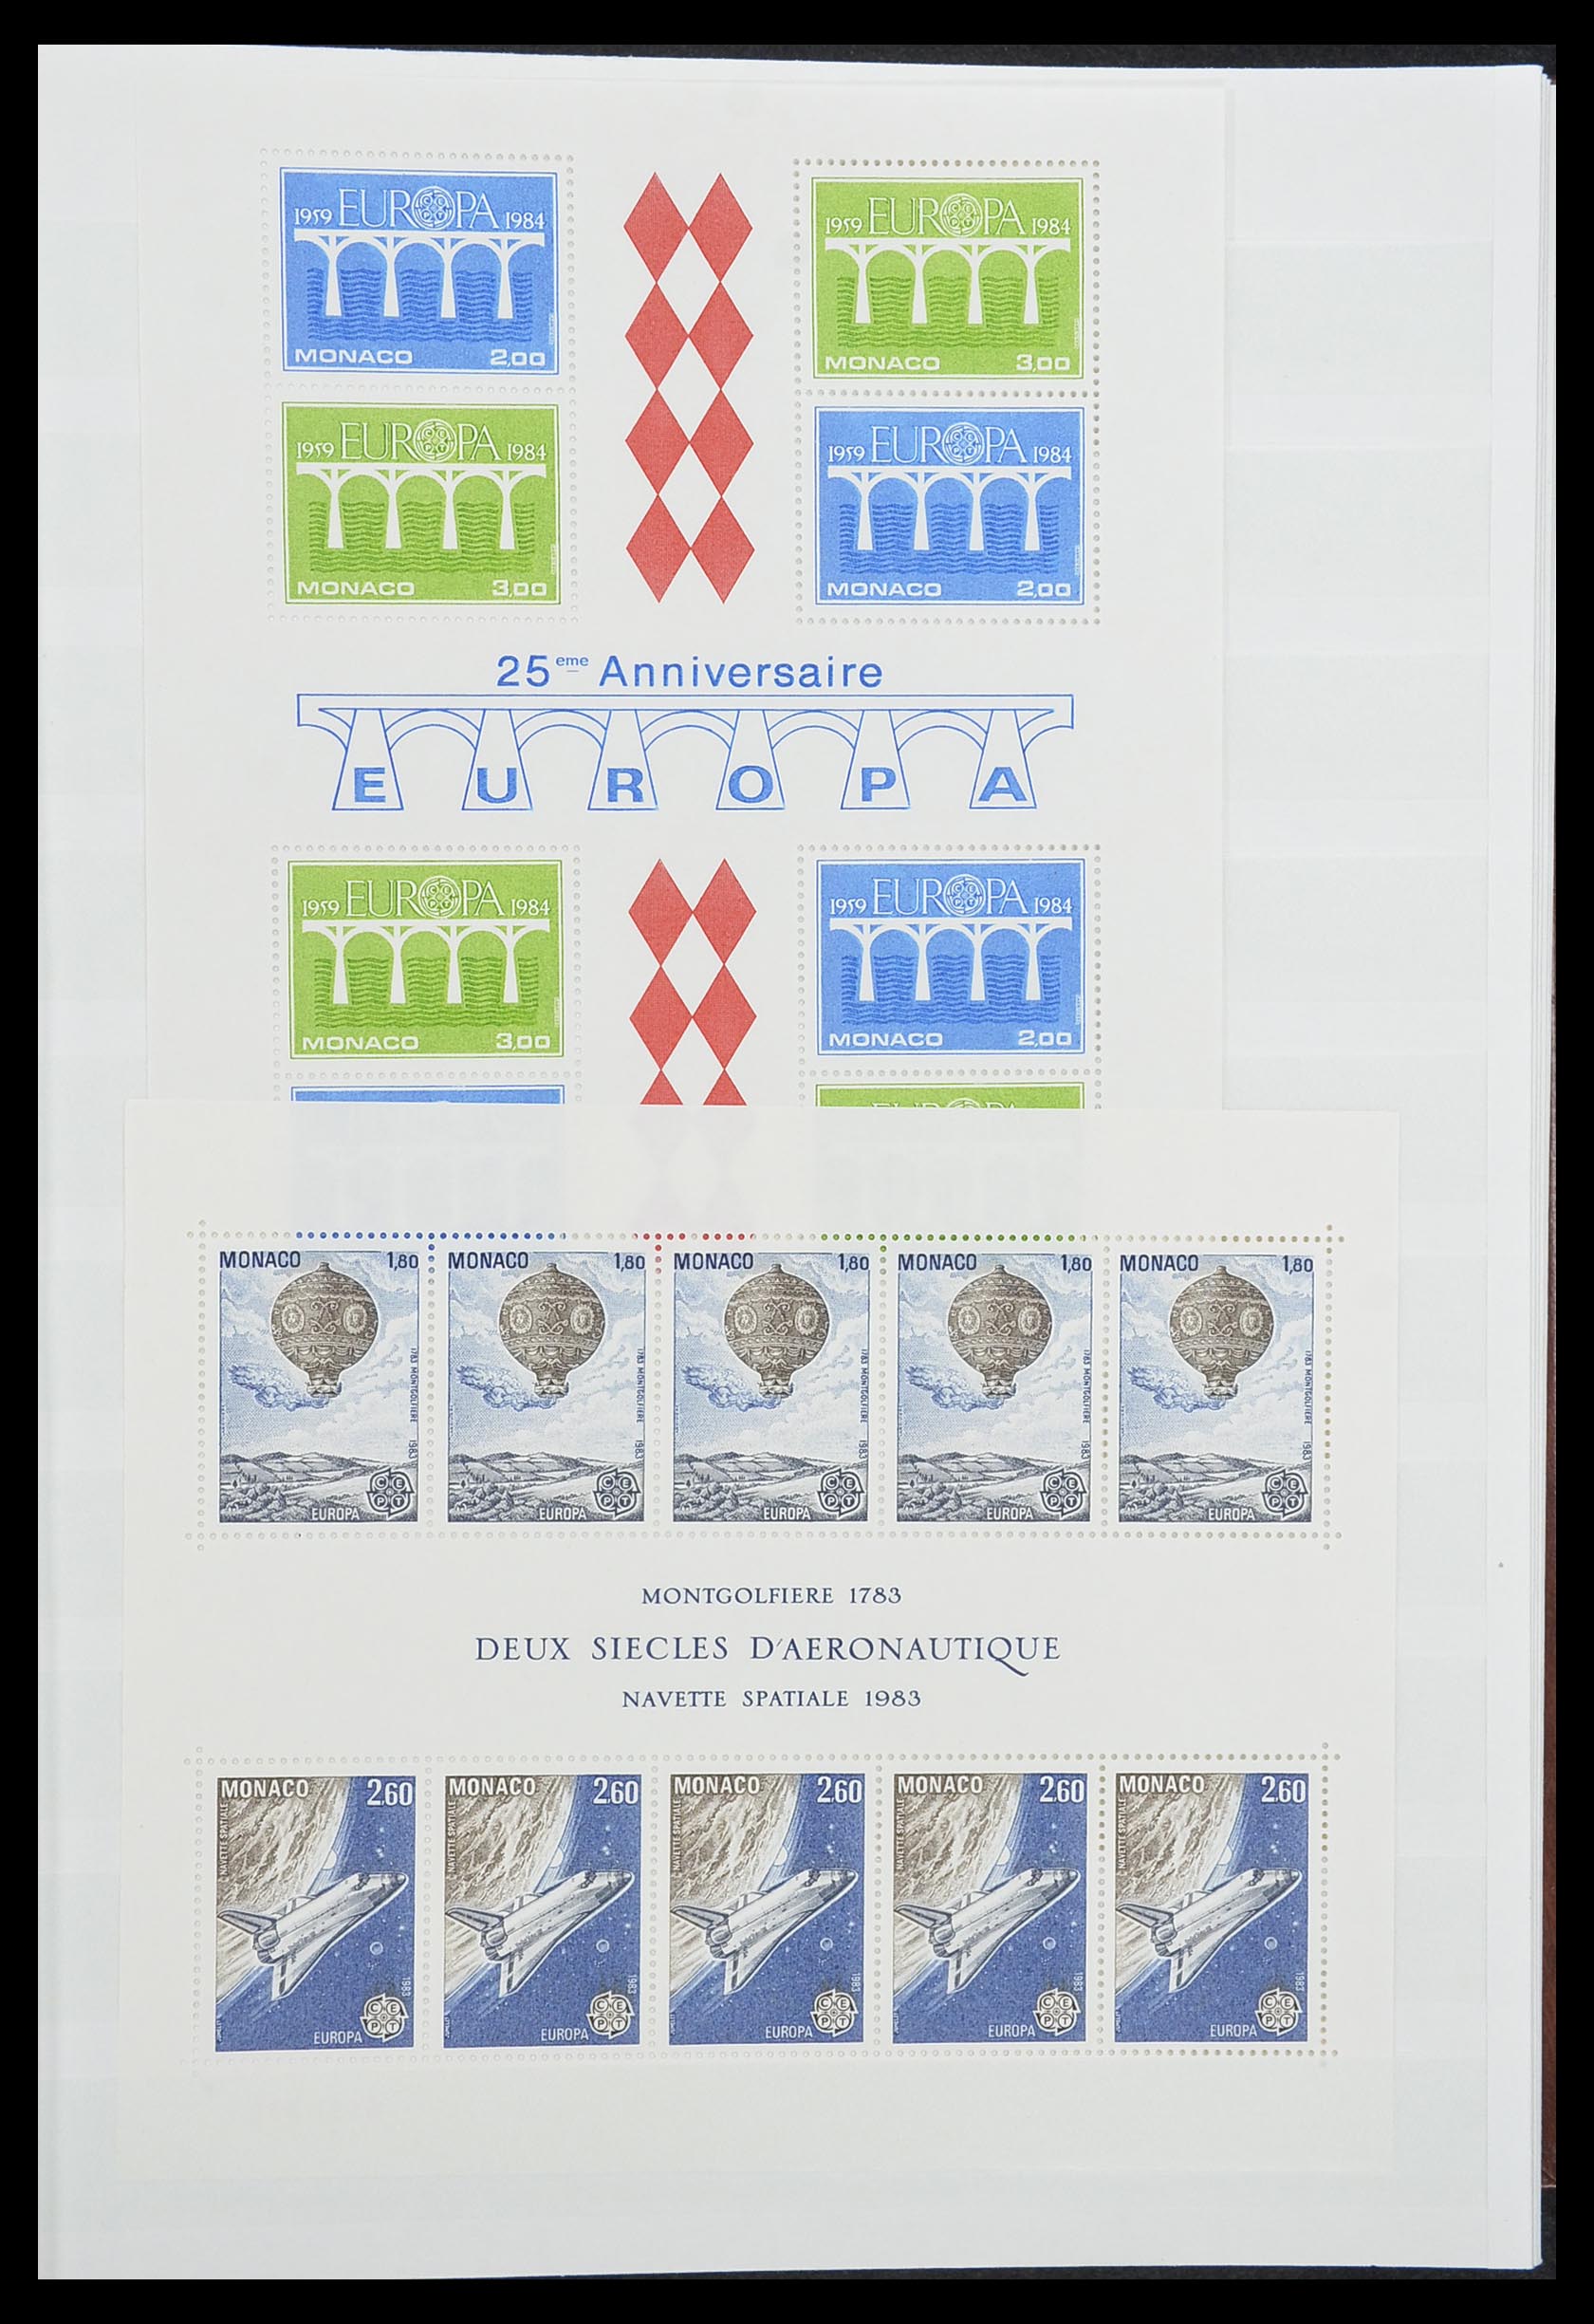 33833 001 - Stamp collection 33833 Monaco souvenir sheets 1979-2015.